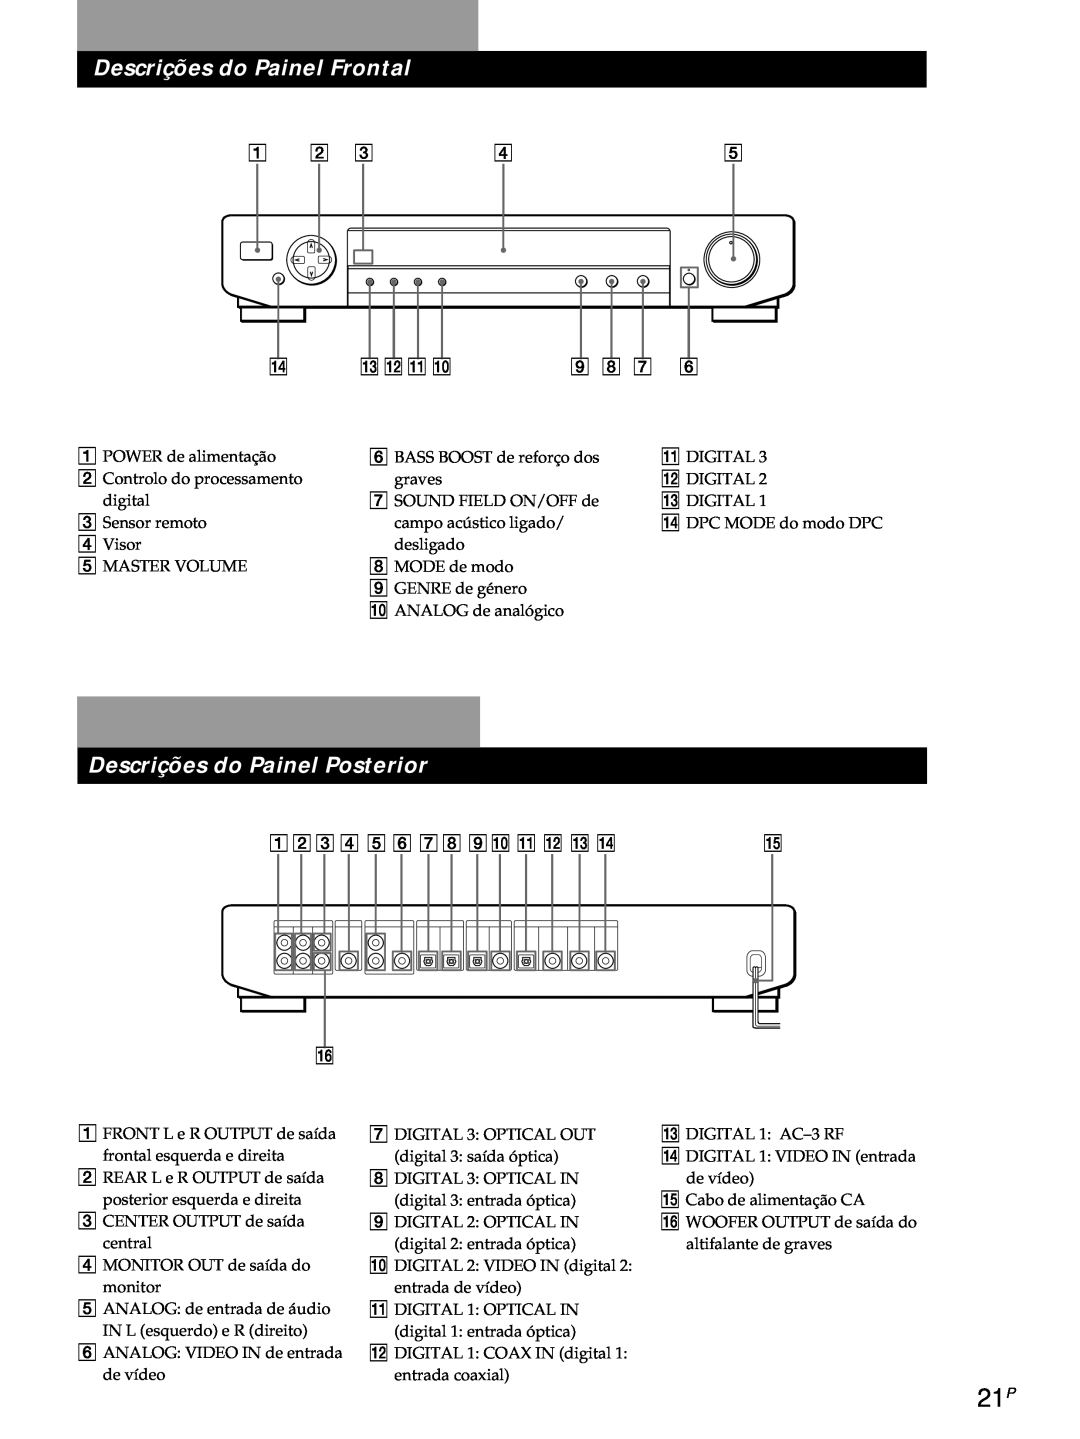 Sony SDP-E800 operating instructions Descrições do Painel Frontal, Descrições do Painel Posterior 